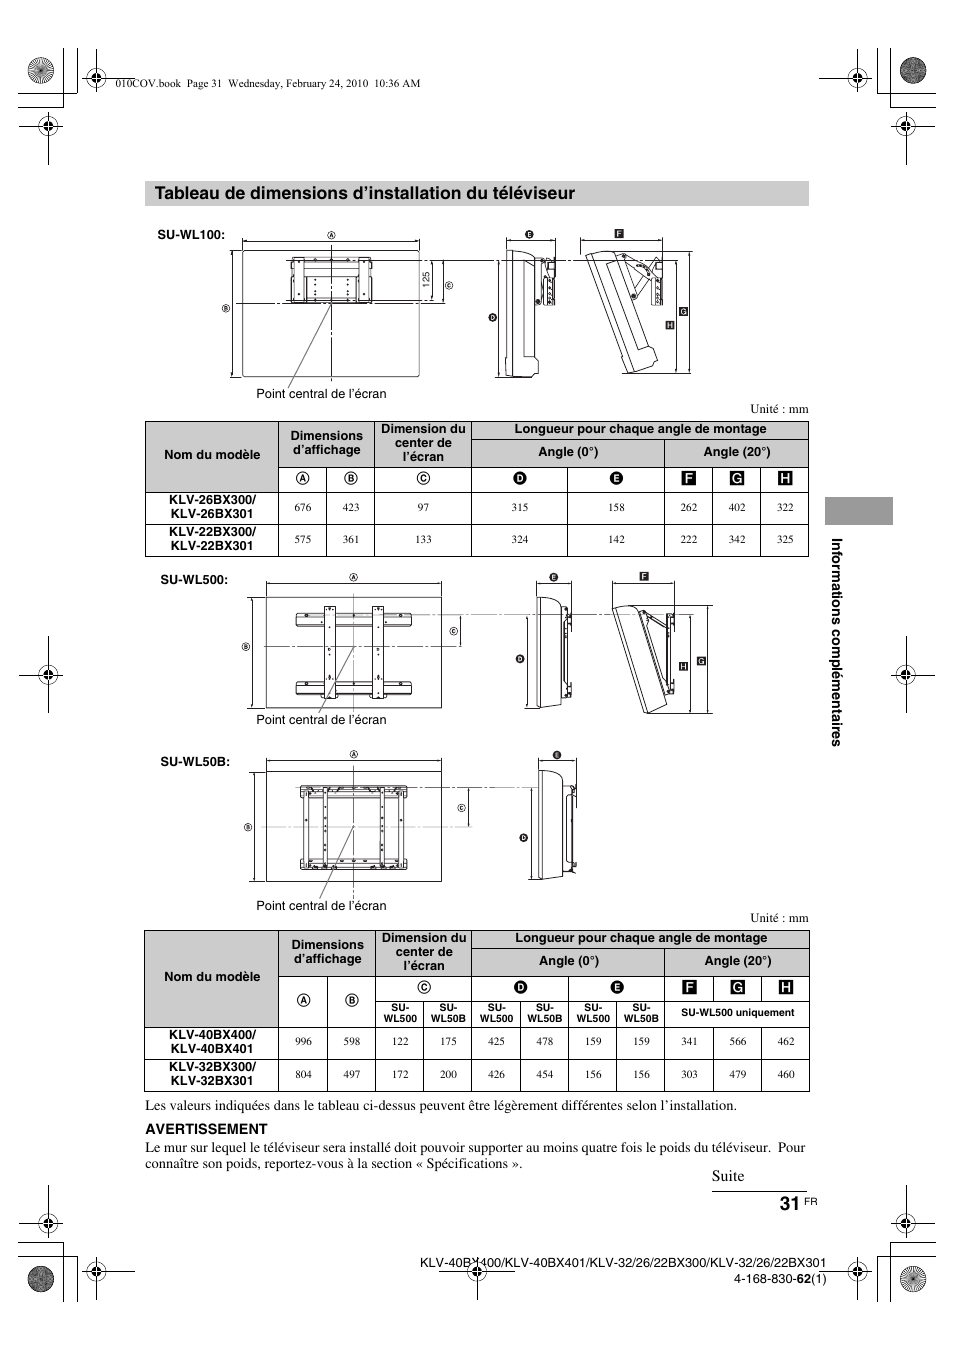 Tableau de dimensions d’installation du téléviseur, Suite | Sony KLV-22BX300 Manuel d'utilisation | Page 31 / 36